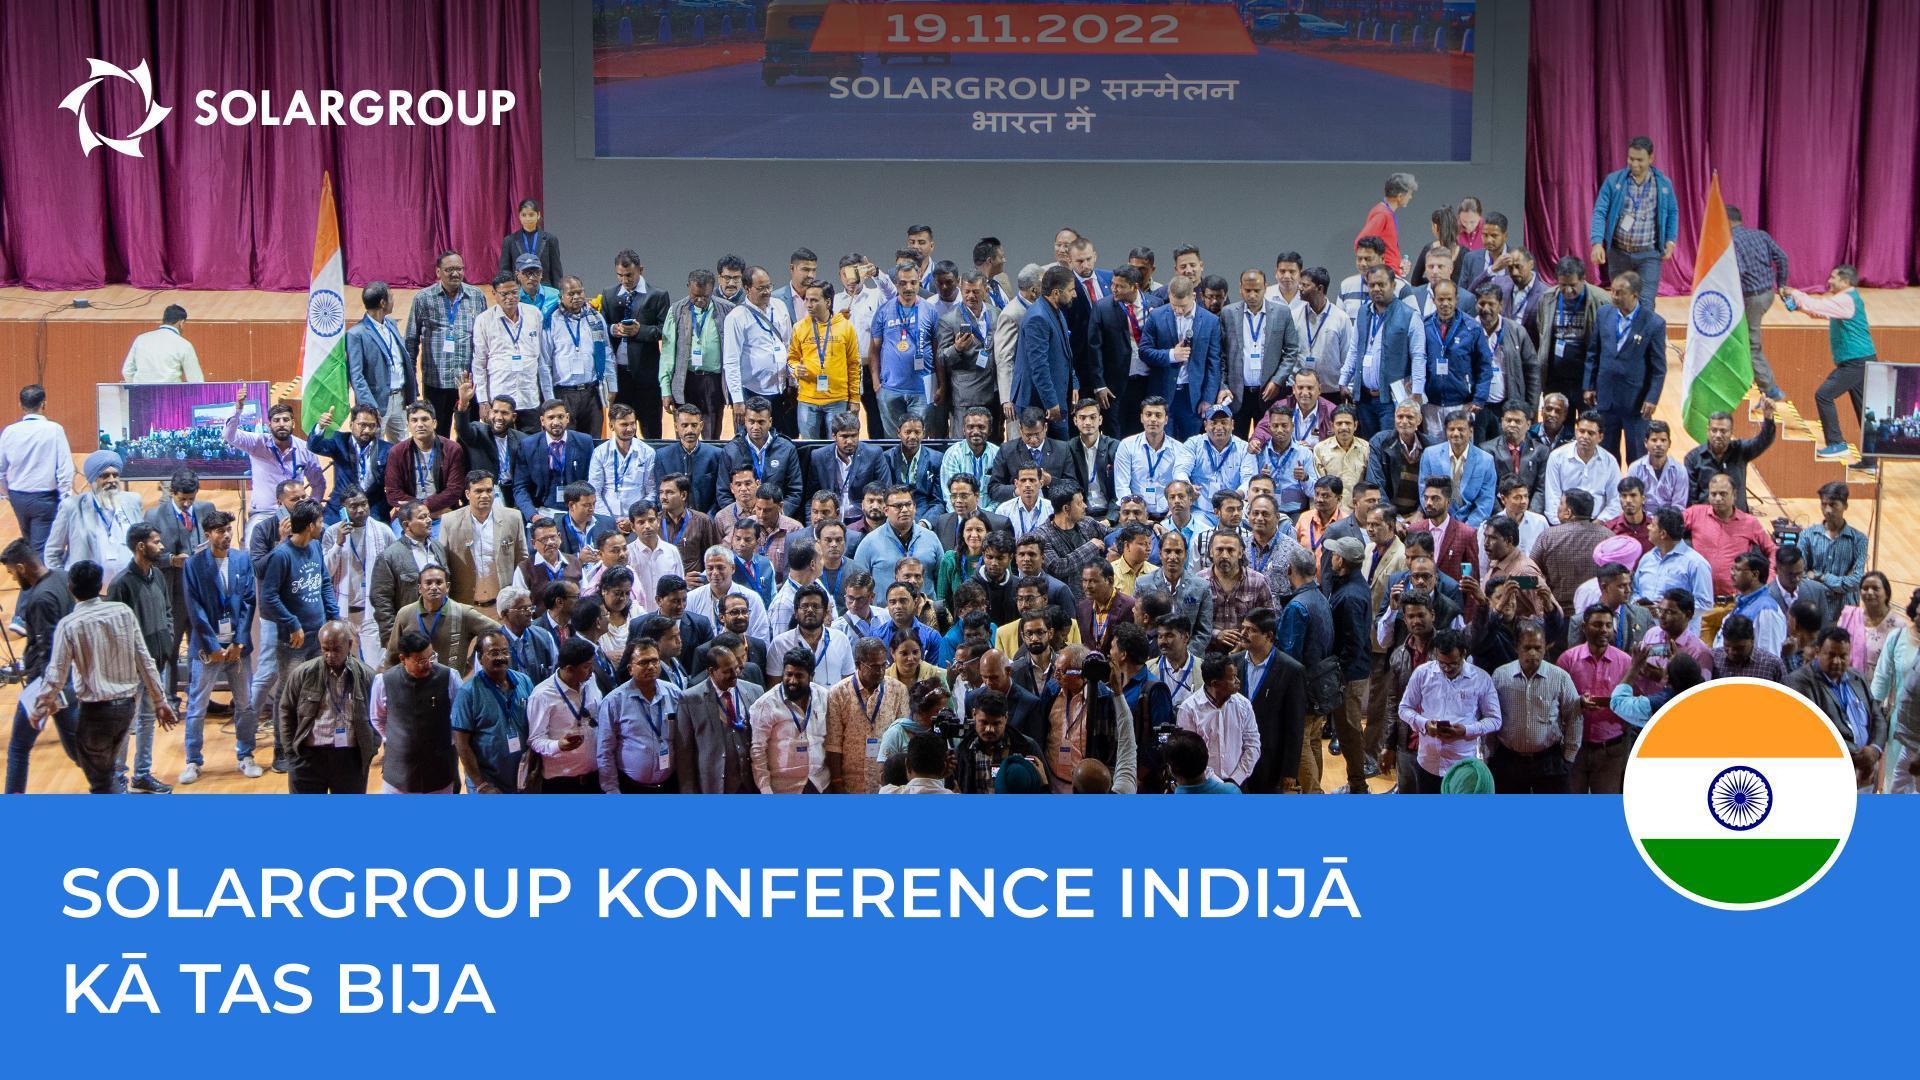 SOLARGROUP konference Indijā: ar ko palika atmiņā notikums